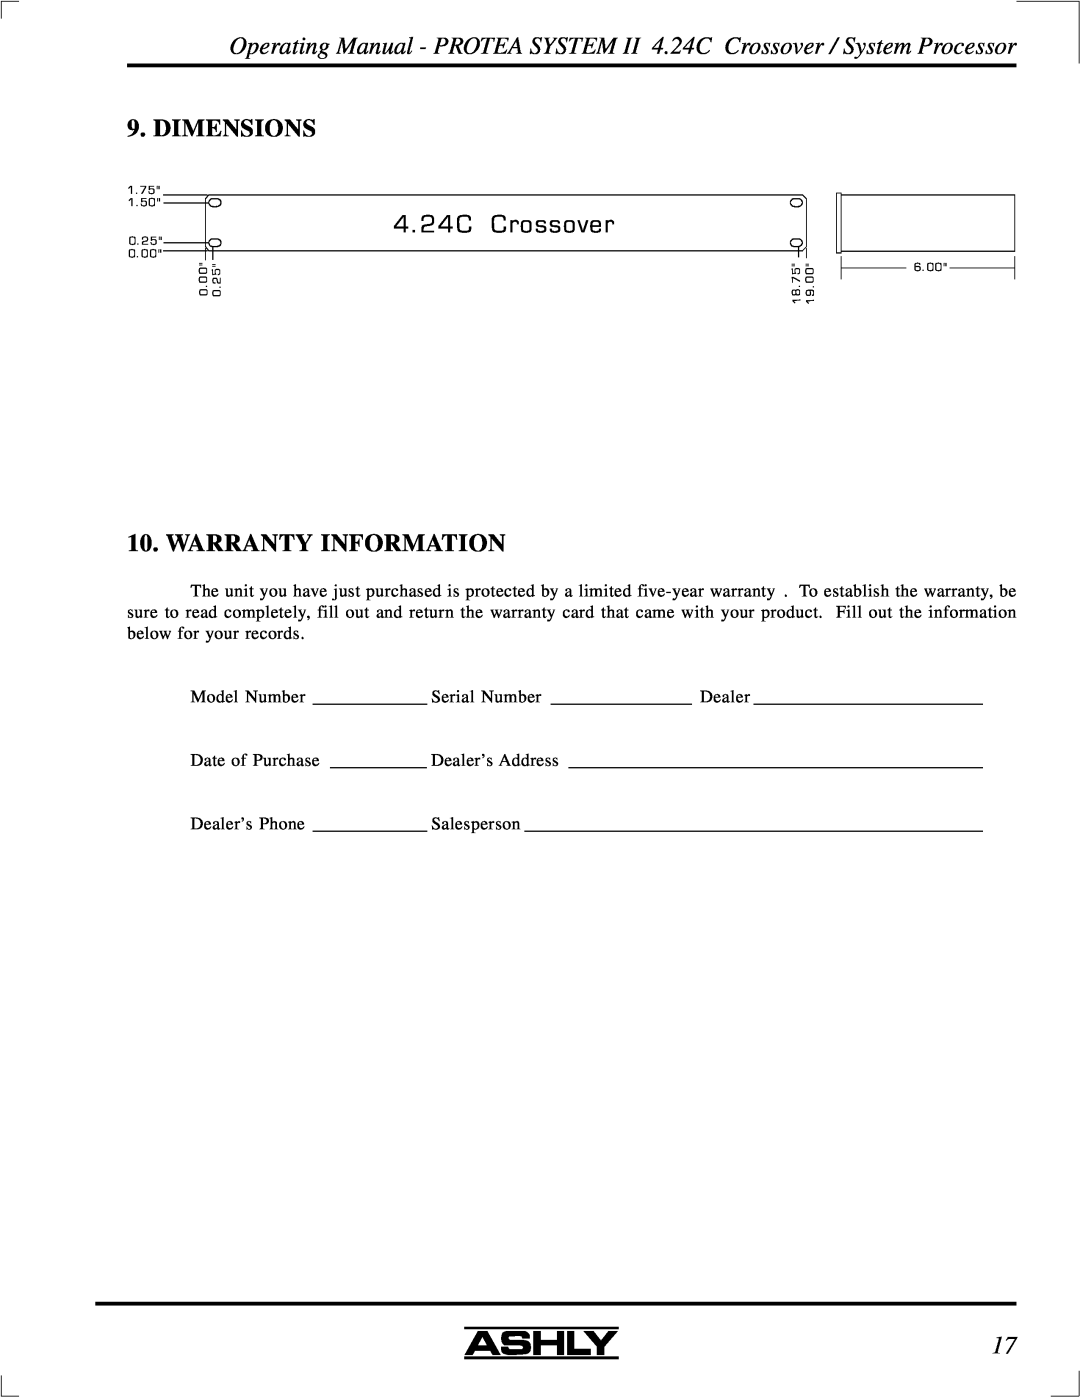 Ashly 4.24C manual 4. 24C, Crossover, Dimensions, Warranty Information 